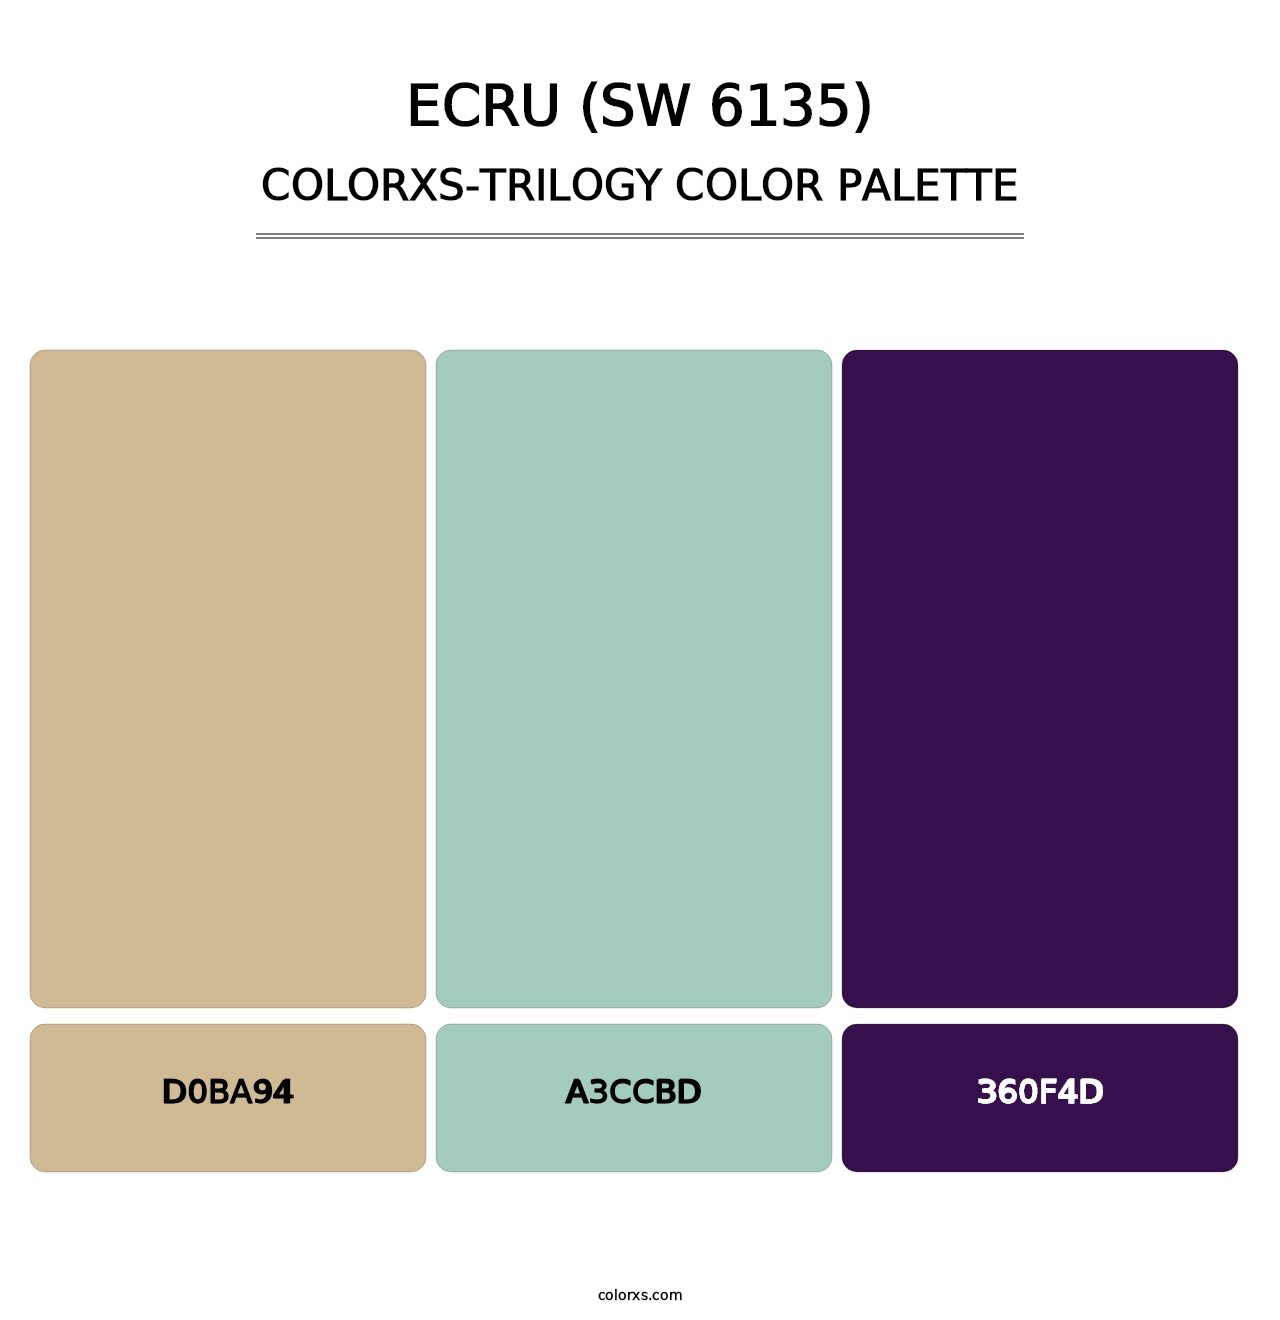 Ecru (SW 6135) - Colorxs Trilogy Palette